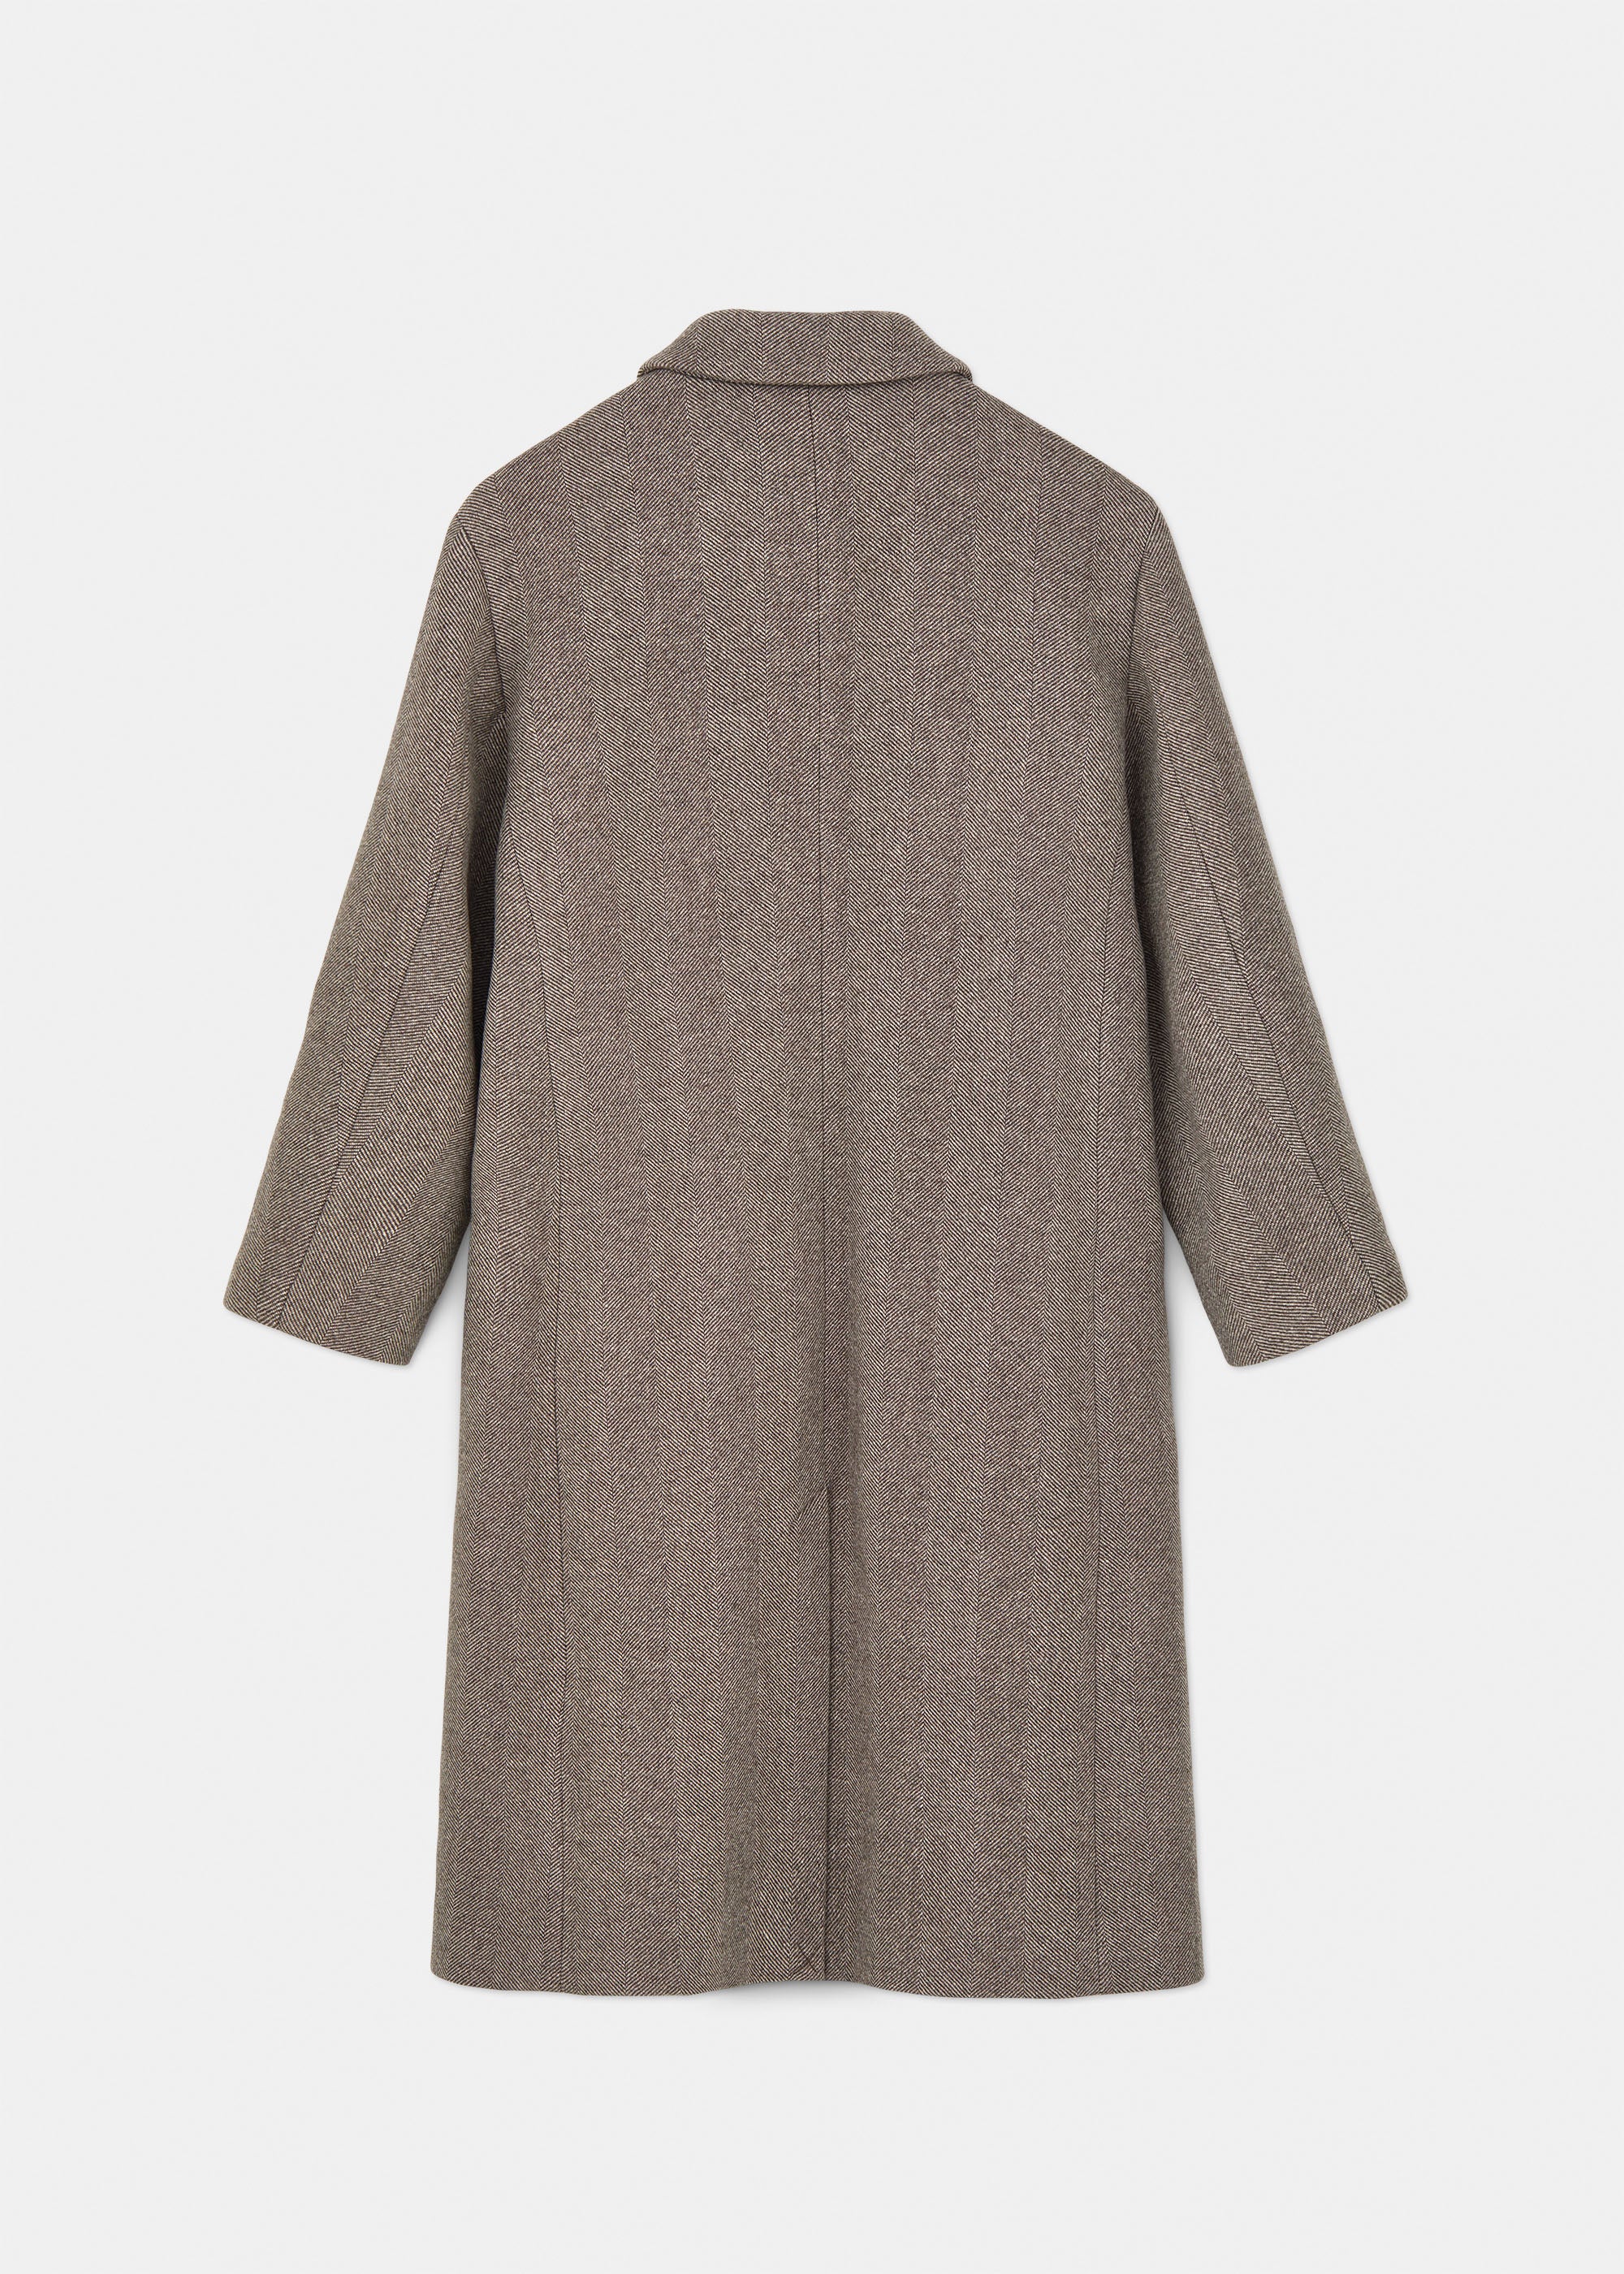 Noah wool coat | Herringbone